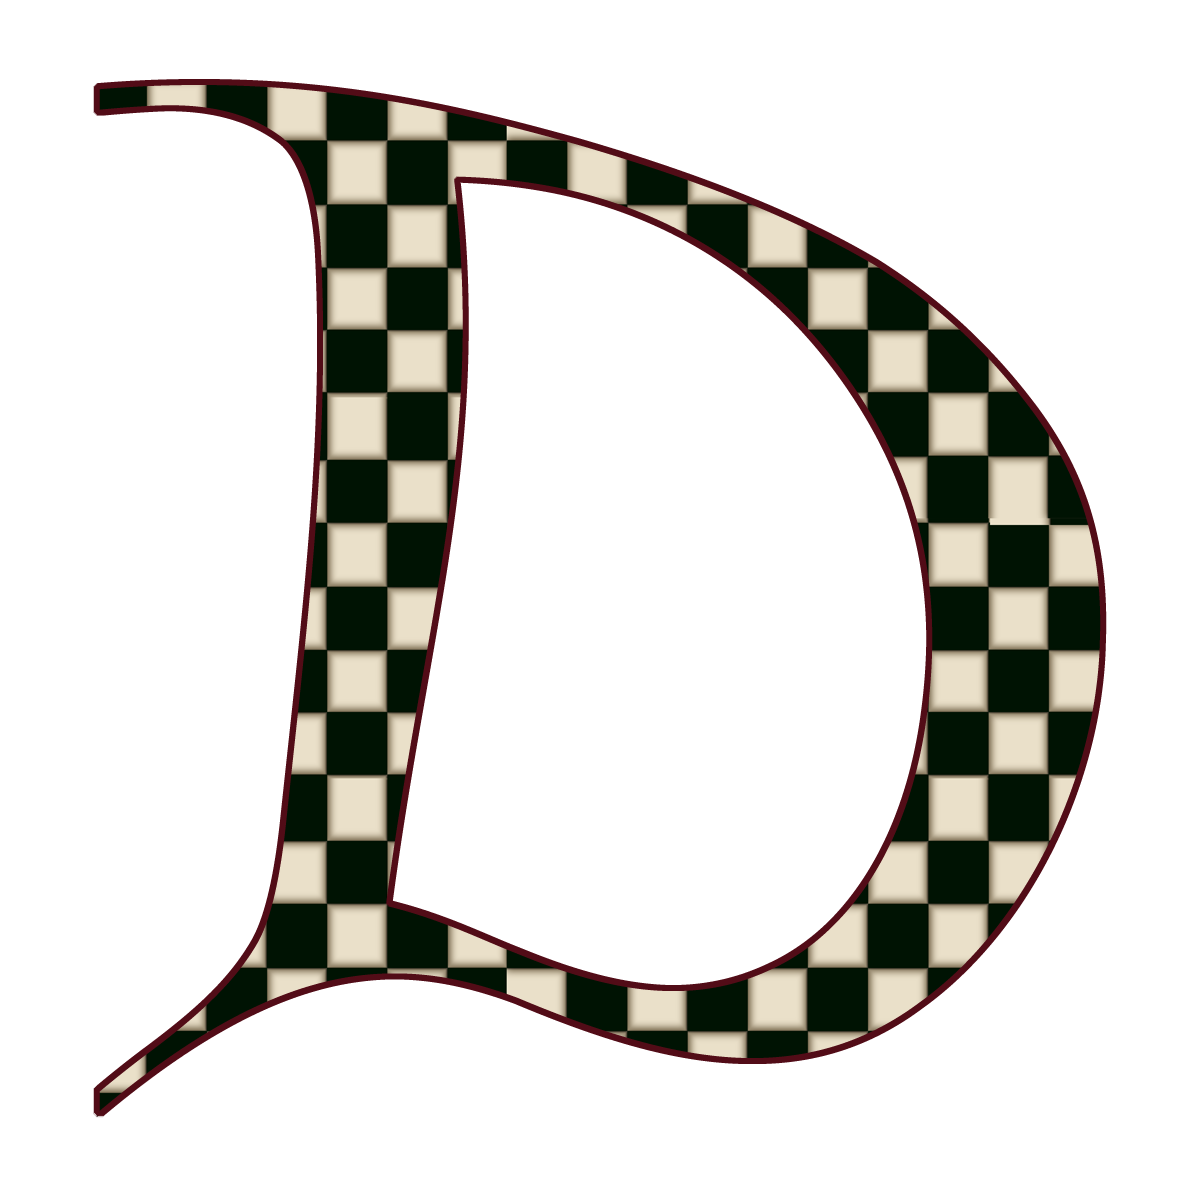 편지 D